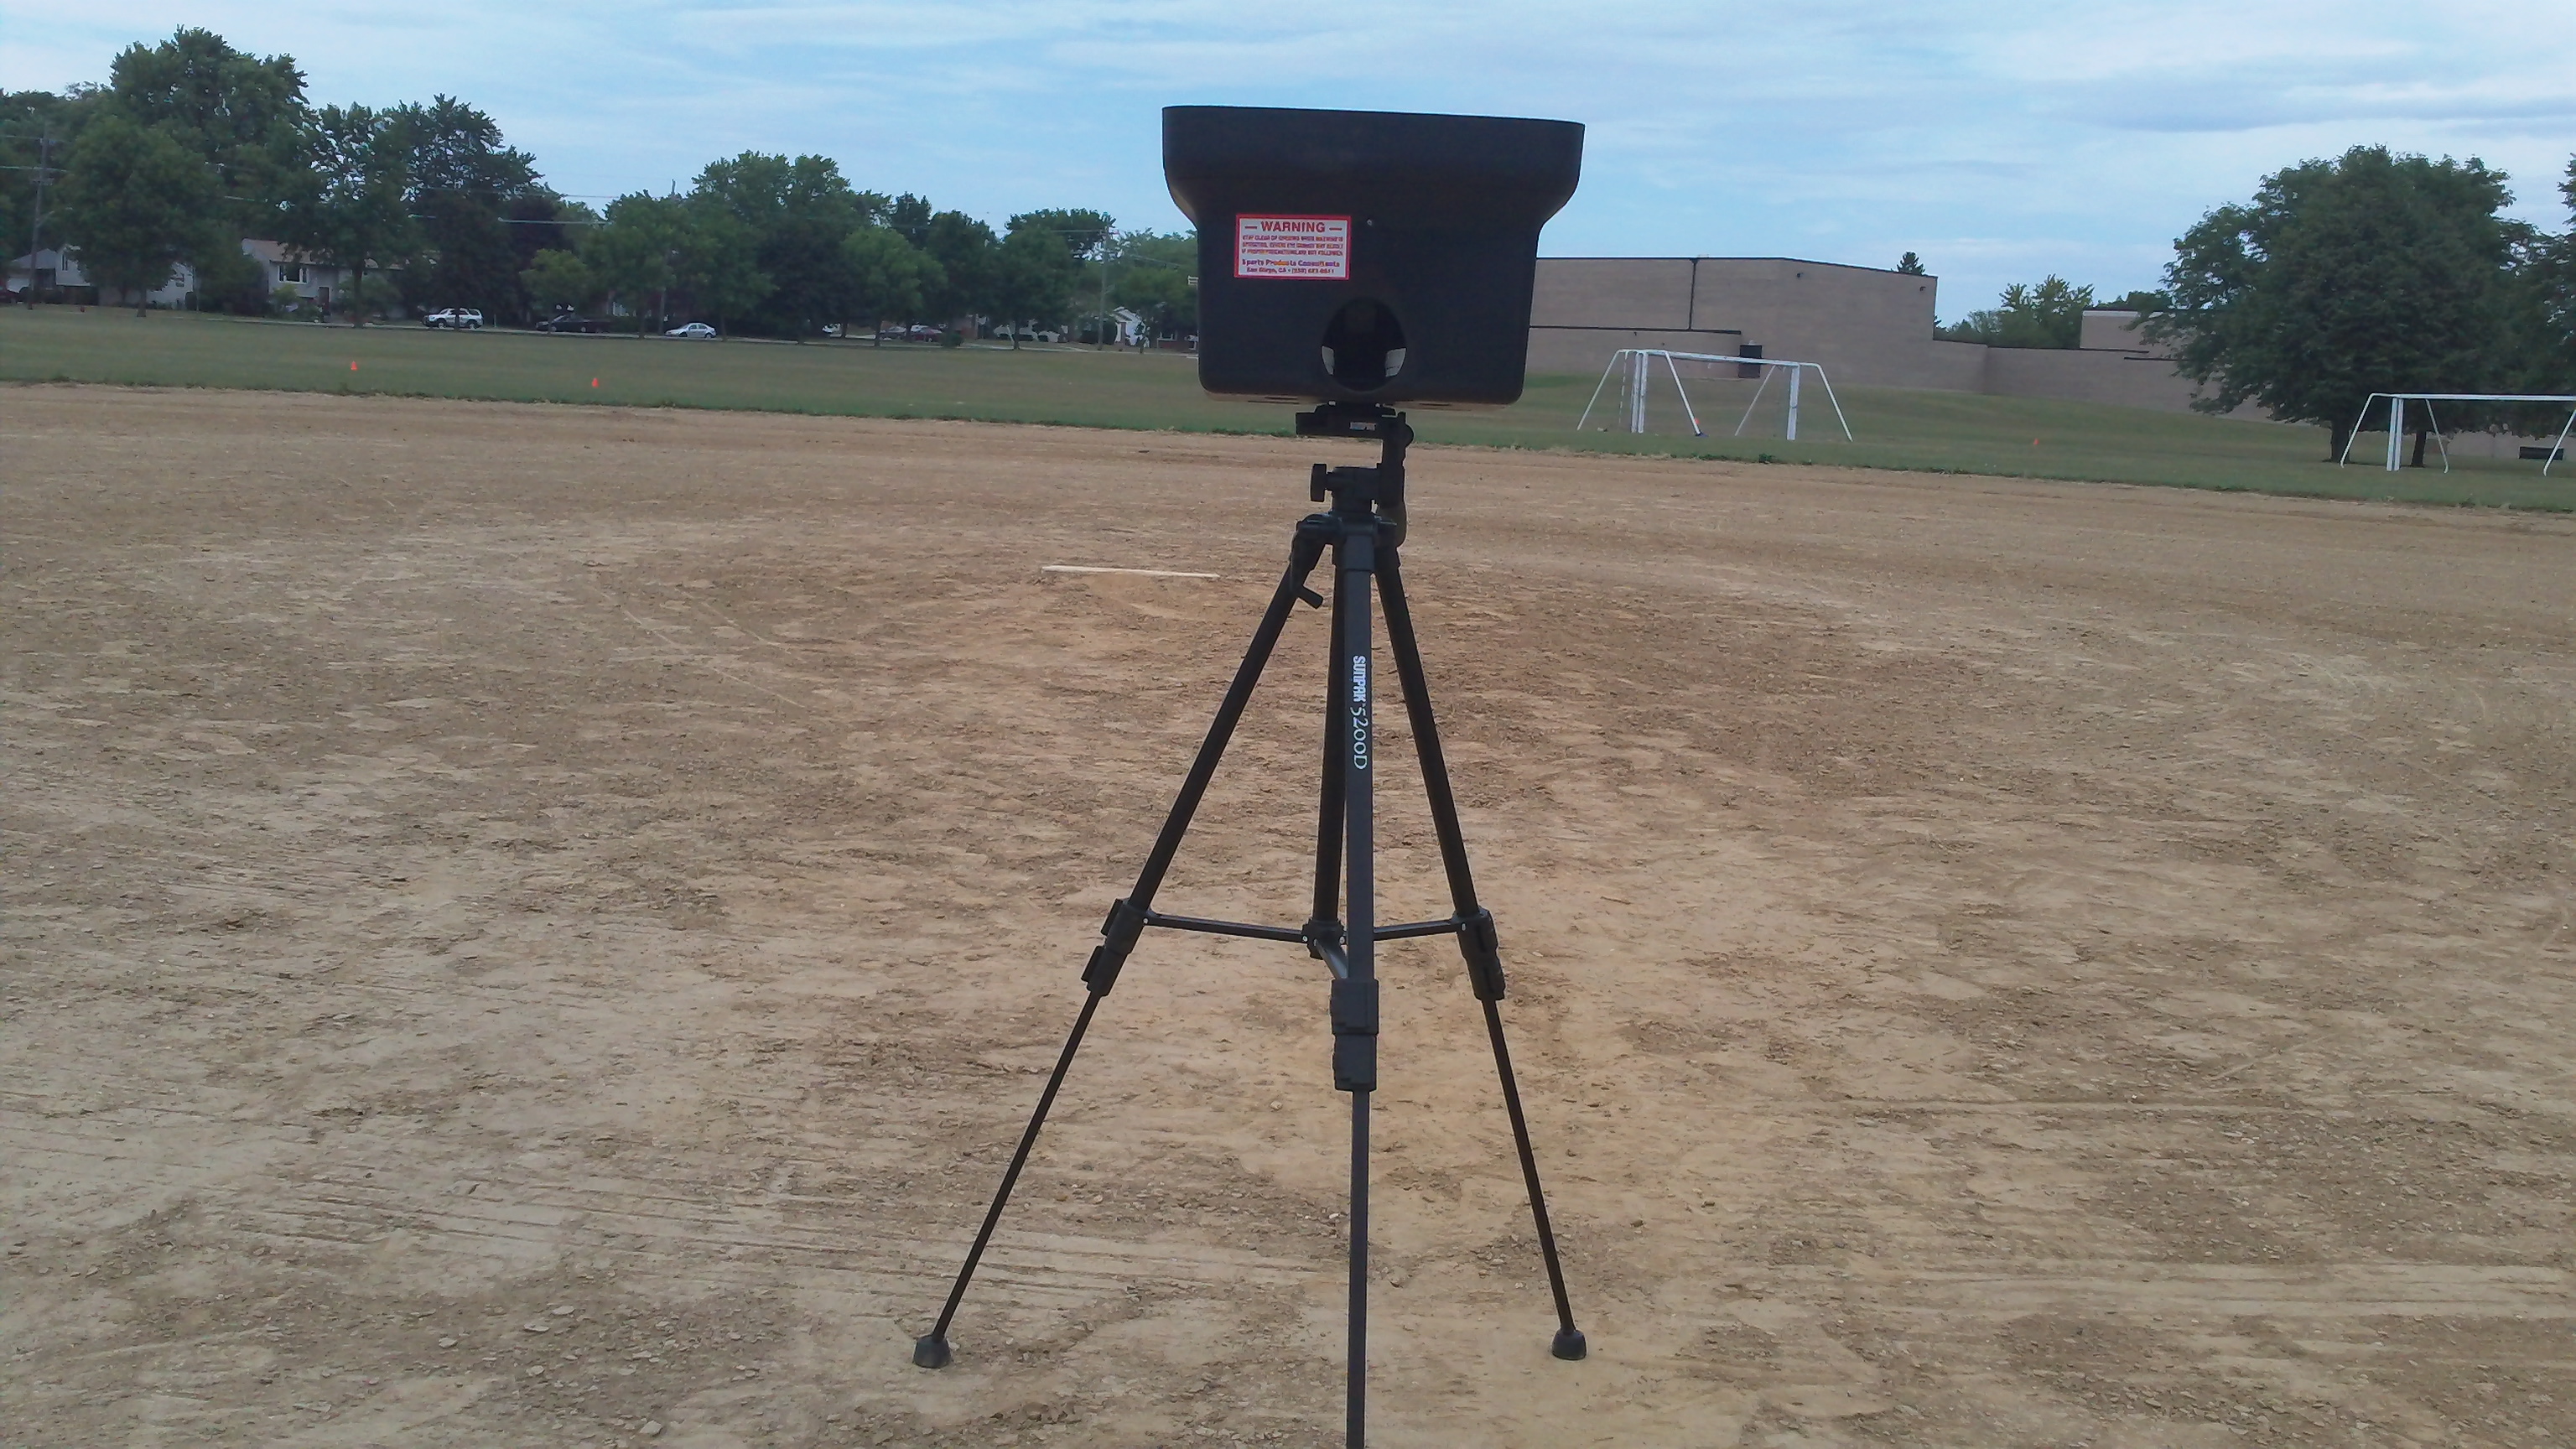 Personal Pitcher pitching machine